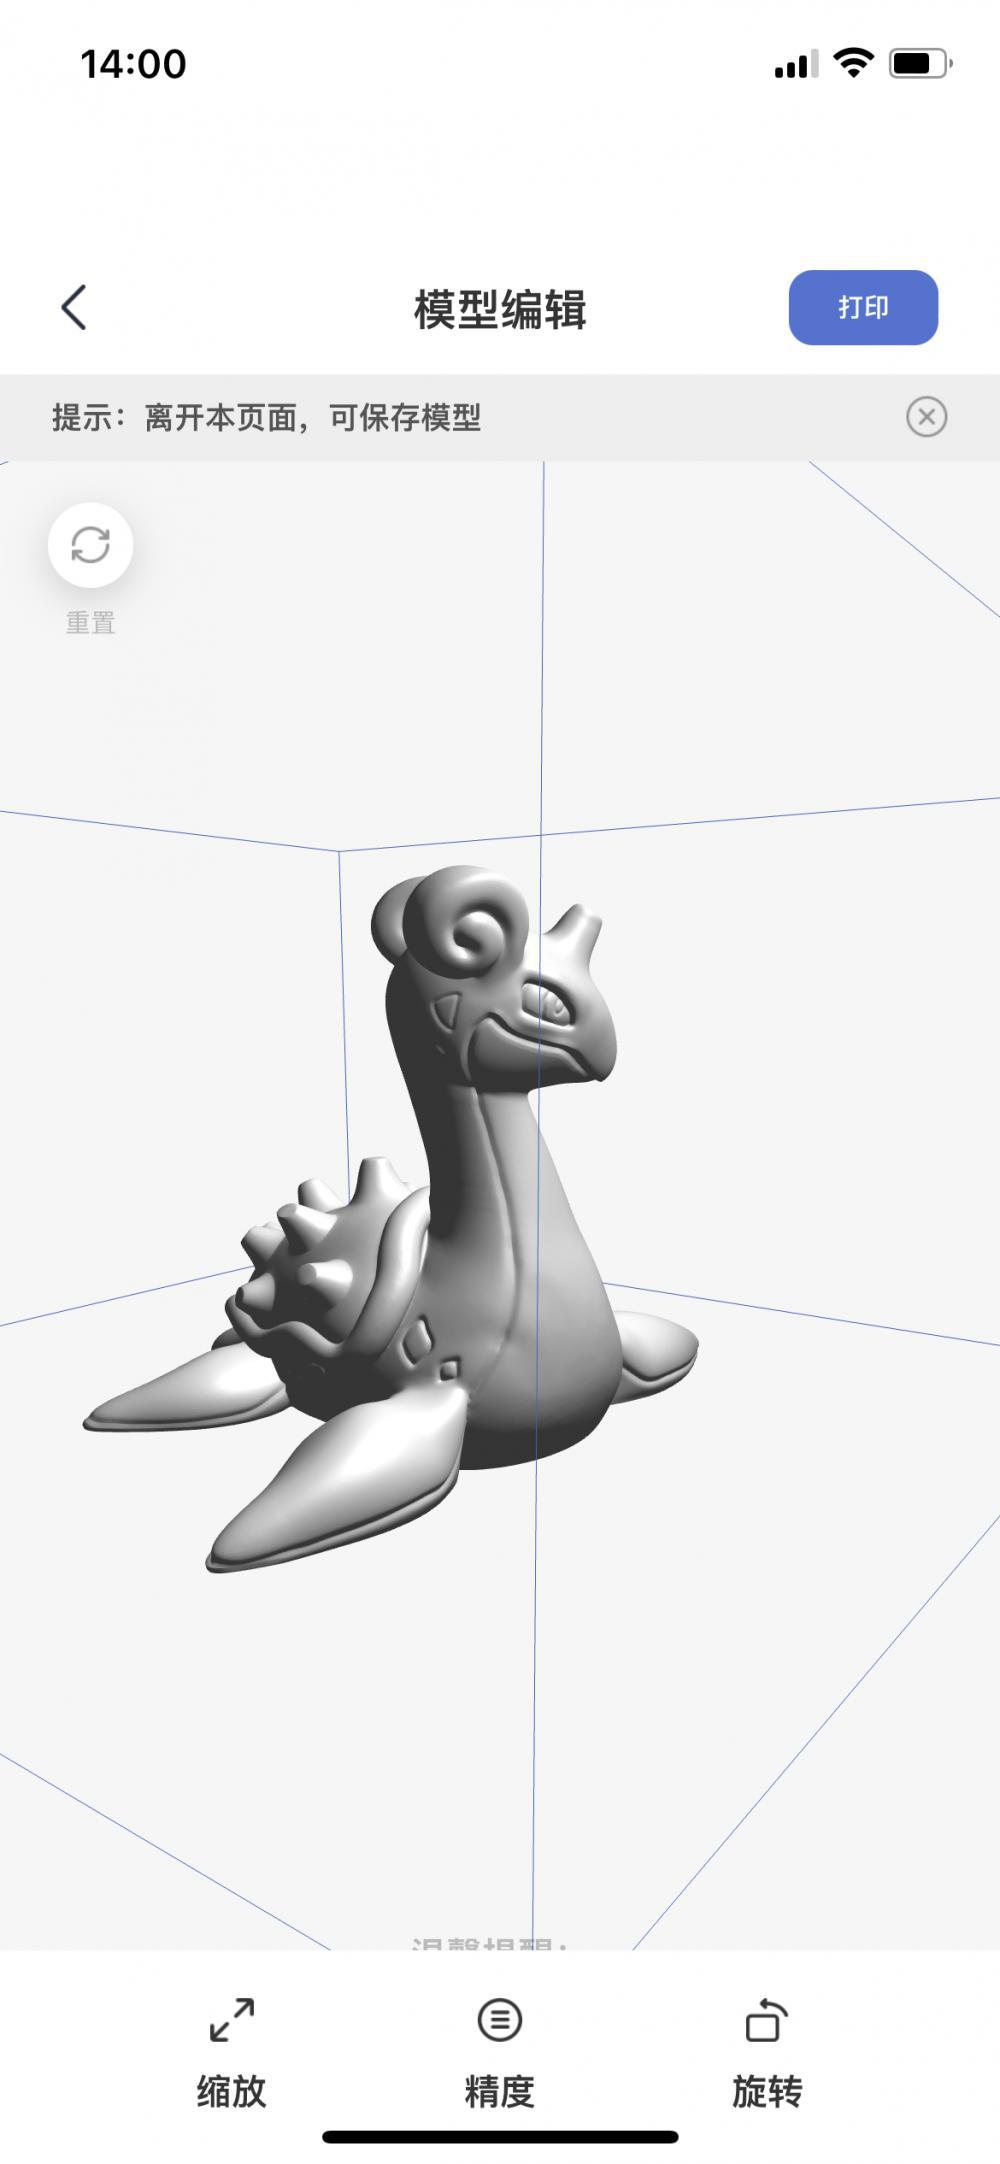 神奇宝贝 拉普拉斯3D打印模型